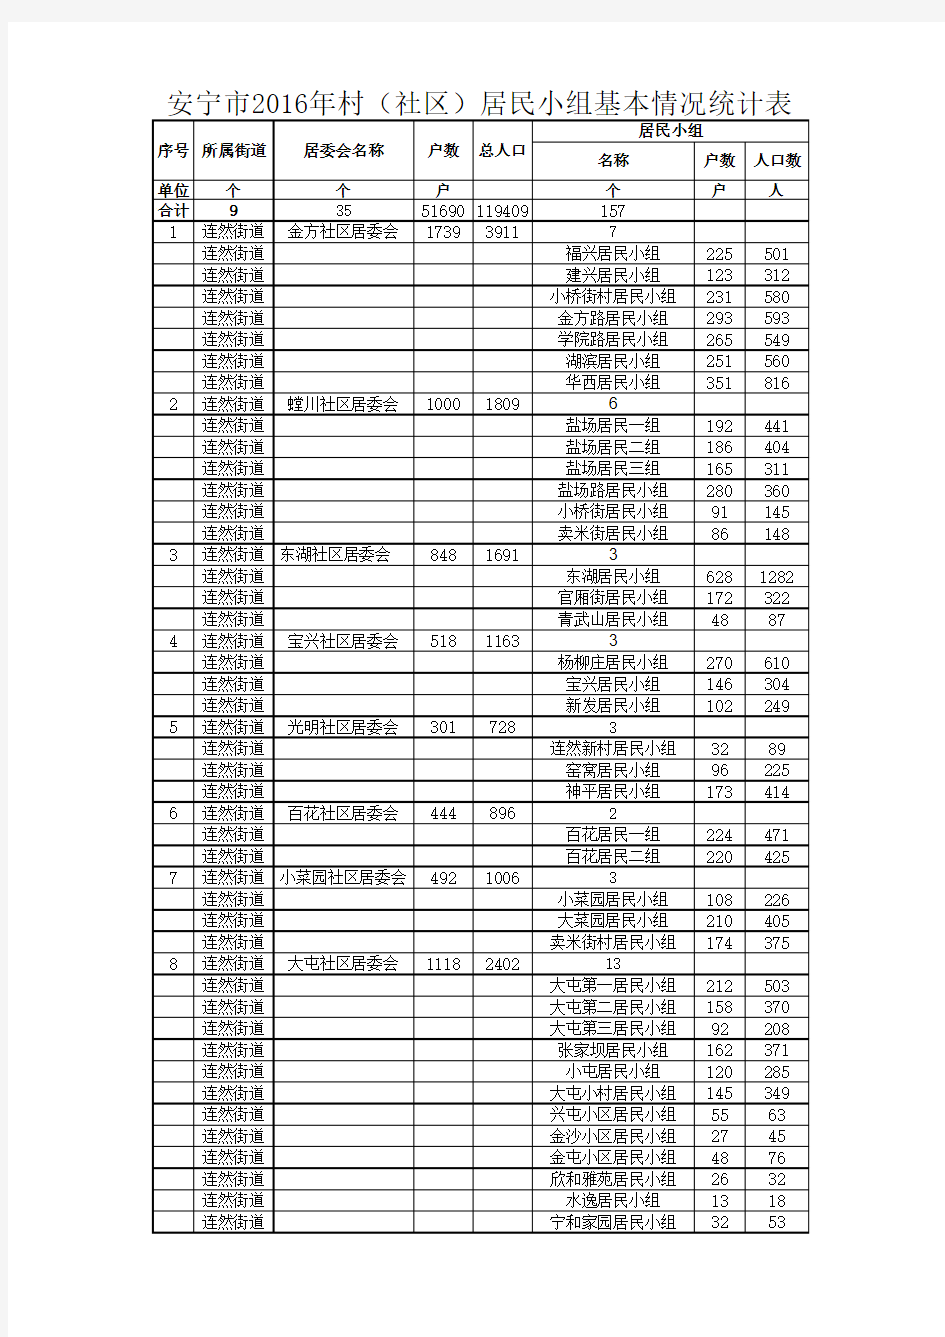 安宁市2016年村(社区)小组基本情况统计表(民政局提供)